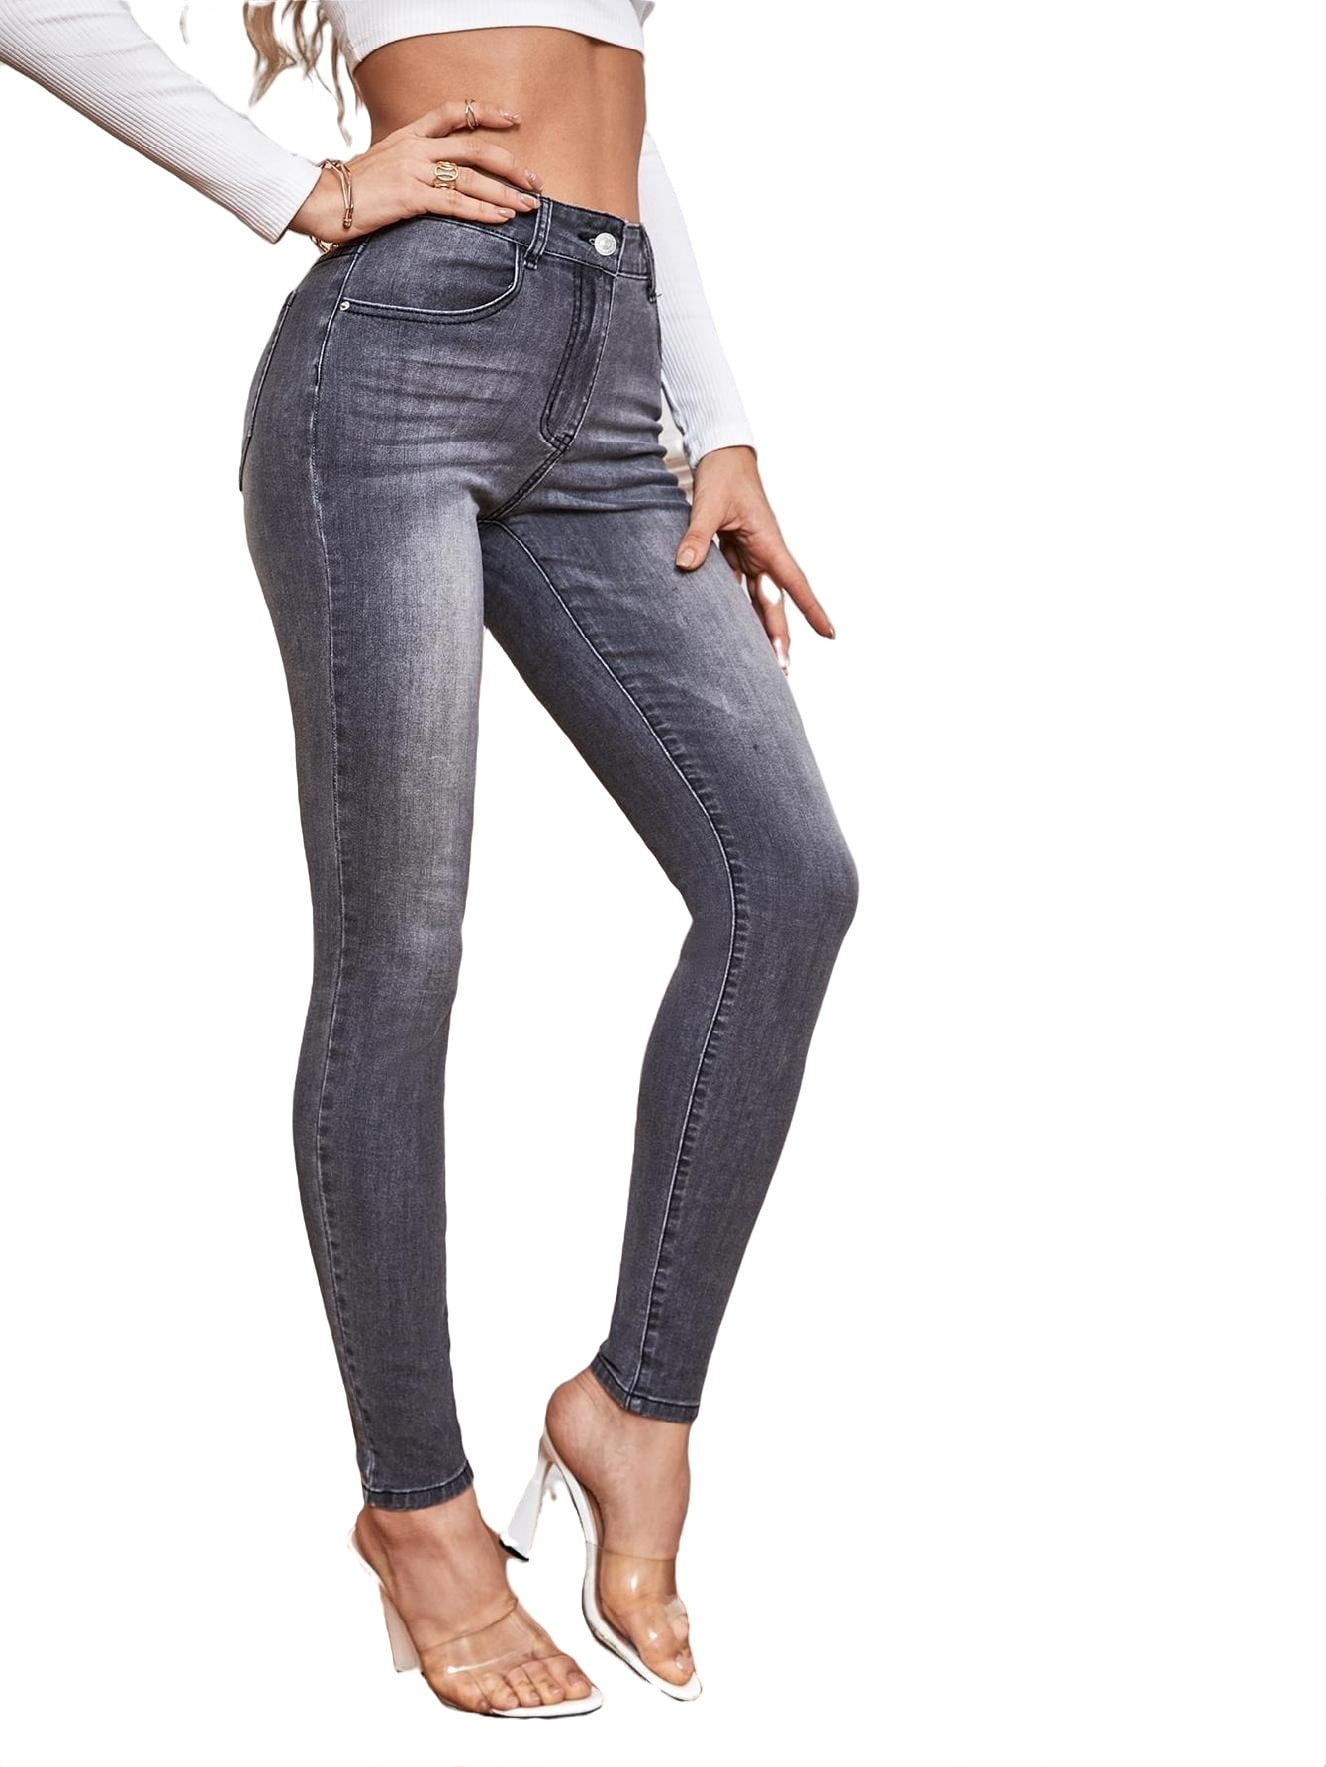 Women's Jeans High Waist Skinny Jeans Dark Grey XS Walmart.com